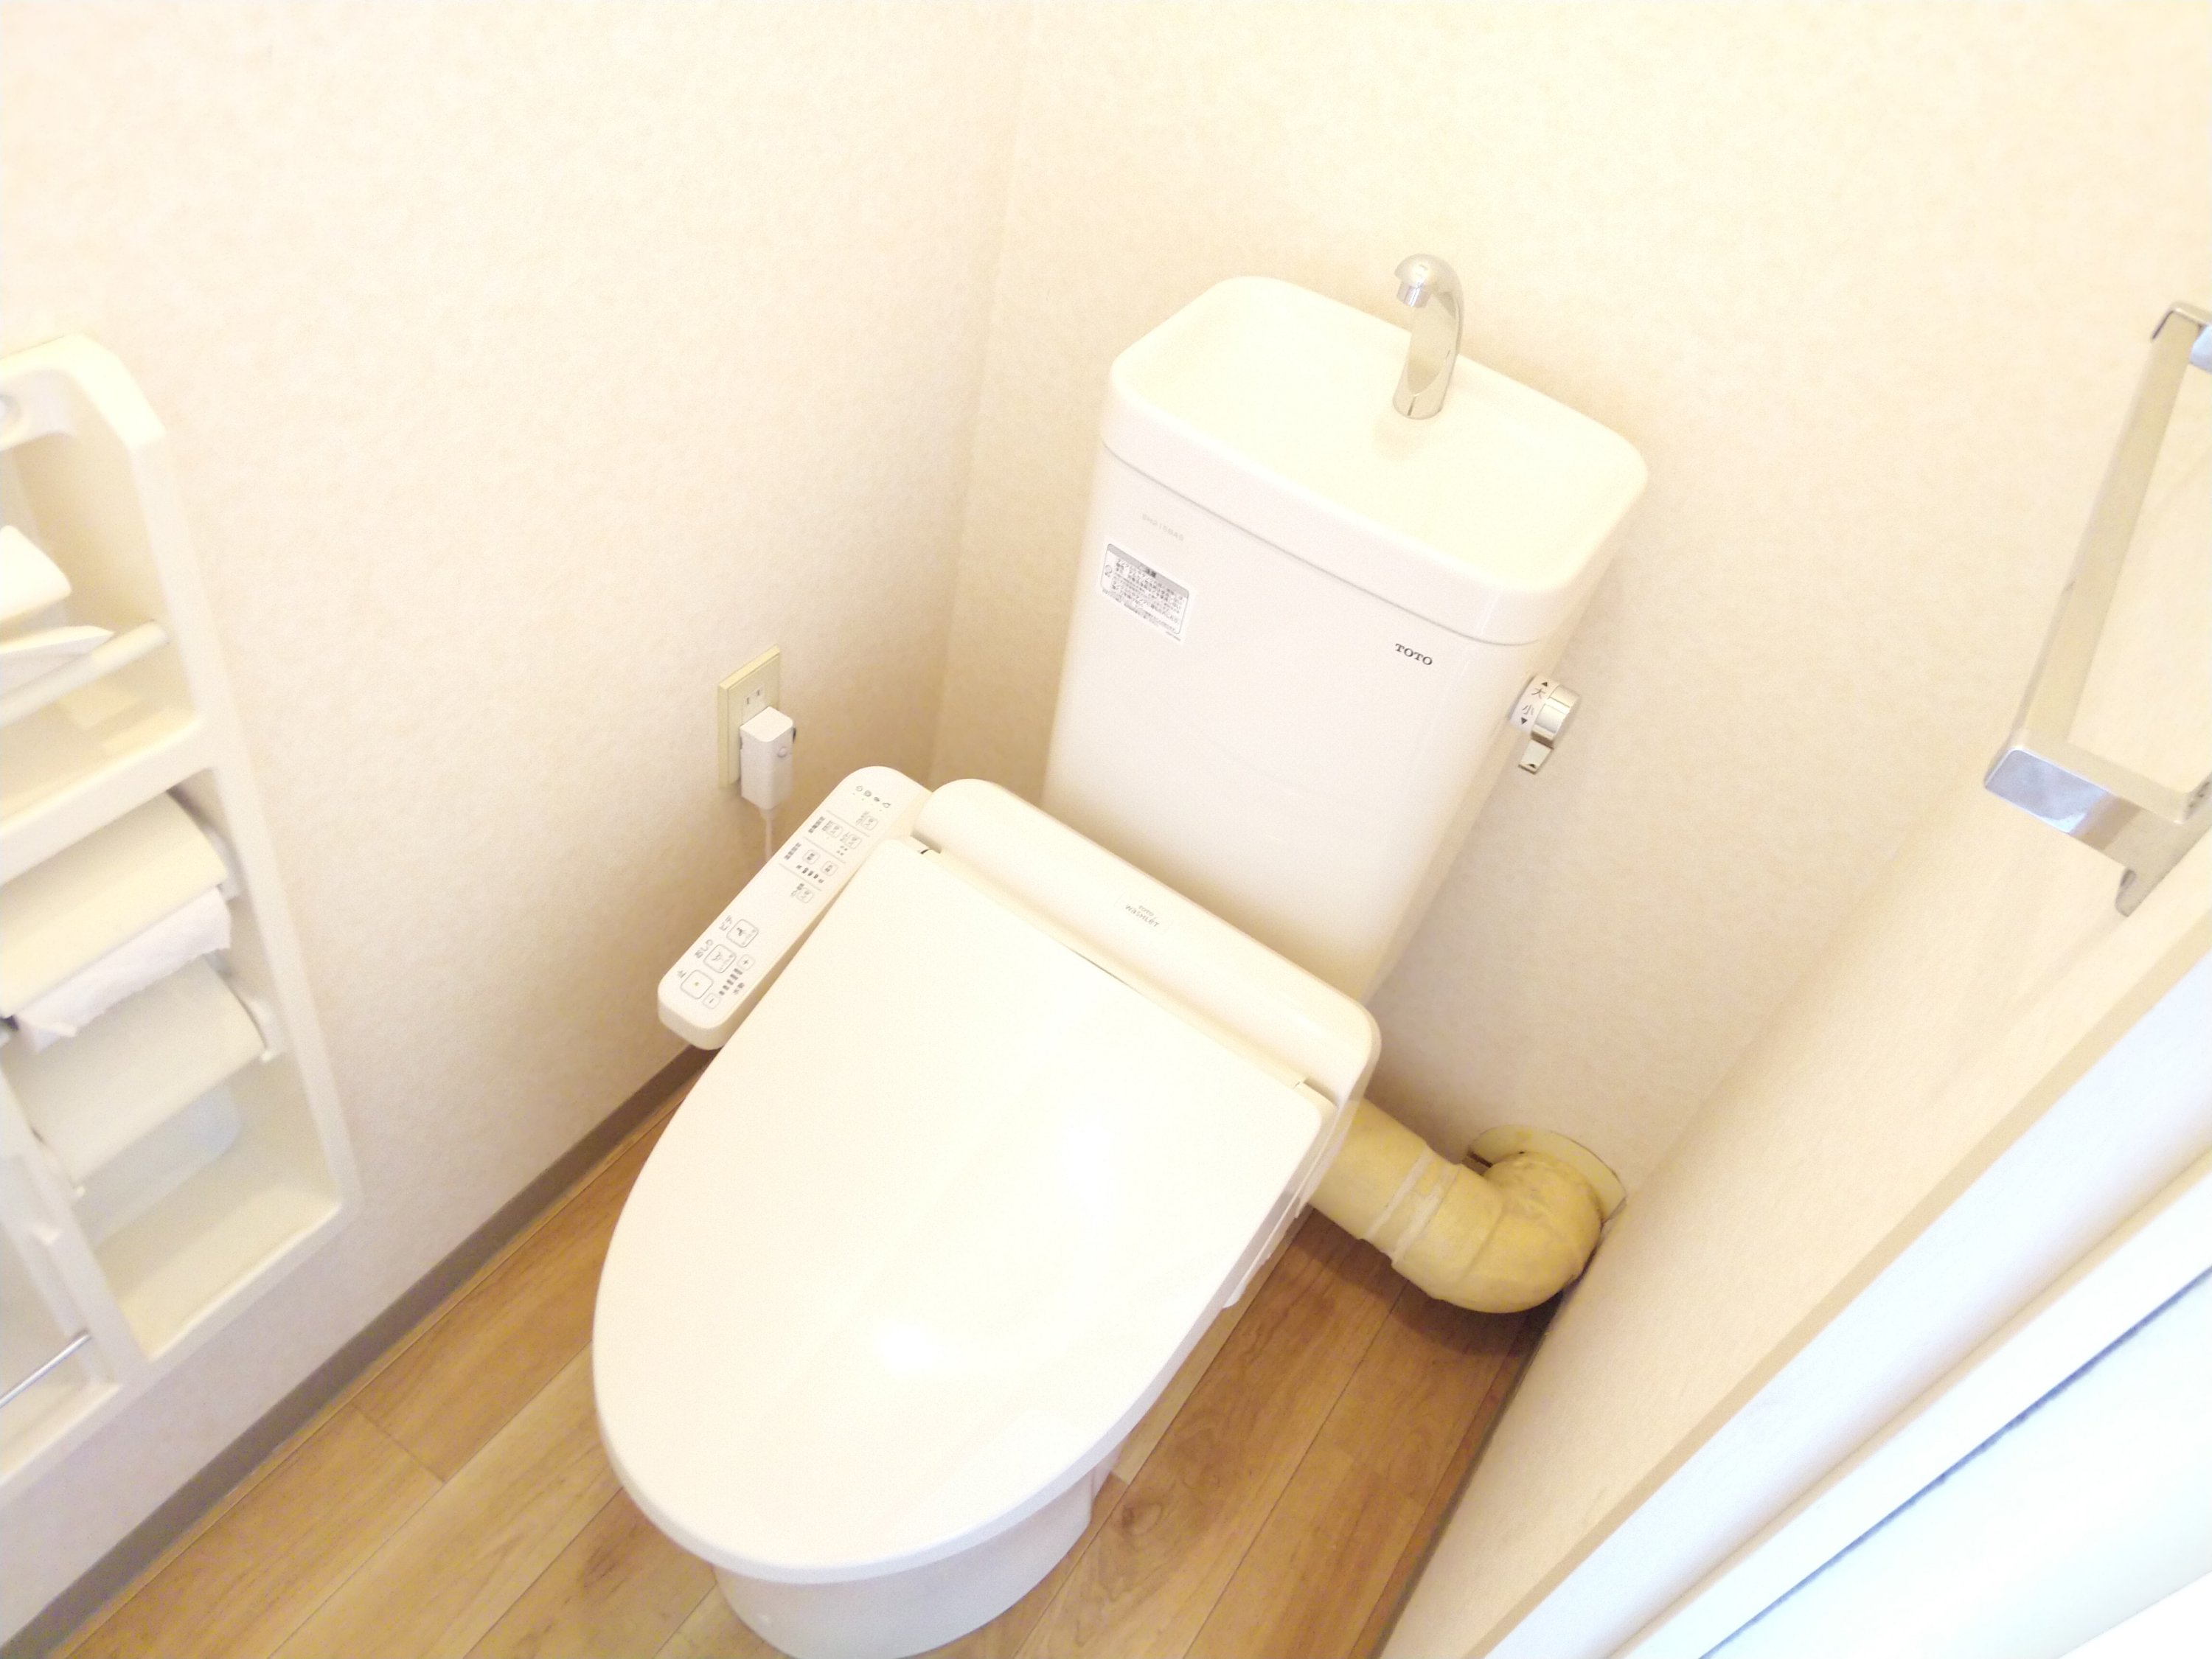 トイレ ピュアレストMR 交換工事 アクア・アテンド さいたま市・水漏れ トイレつまり修理 漏水調査 給湯器